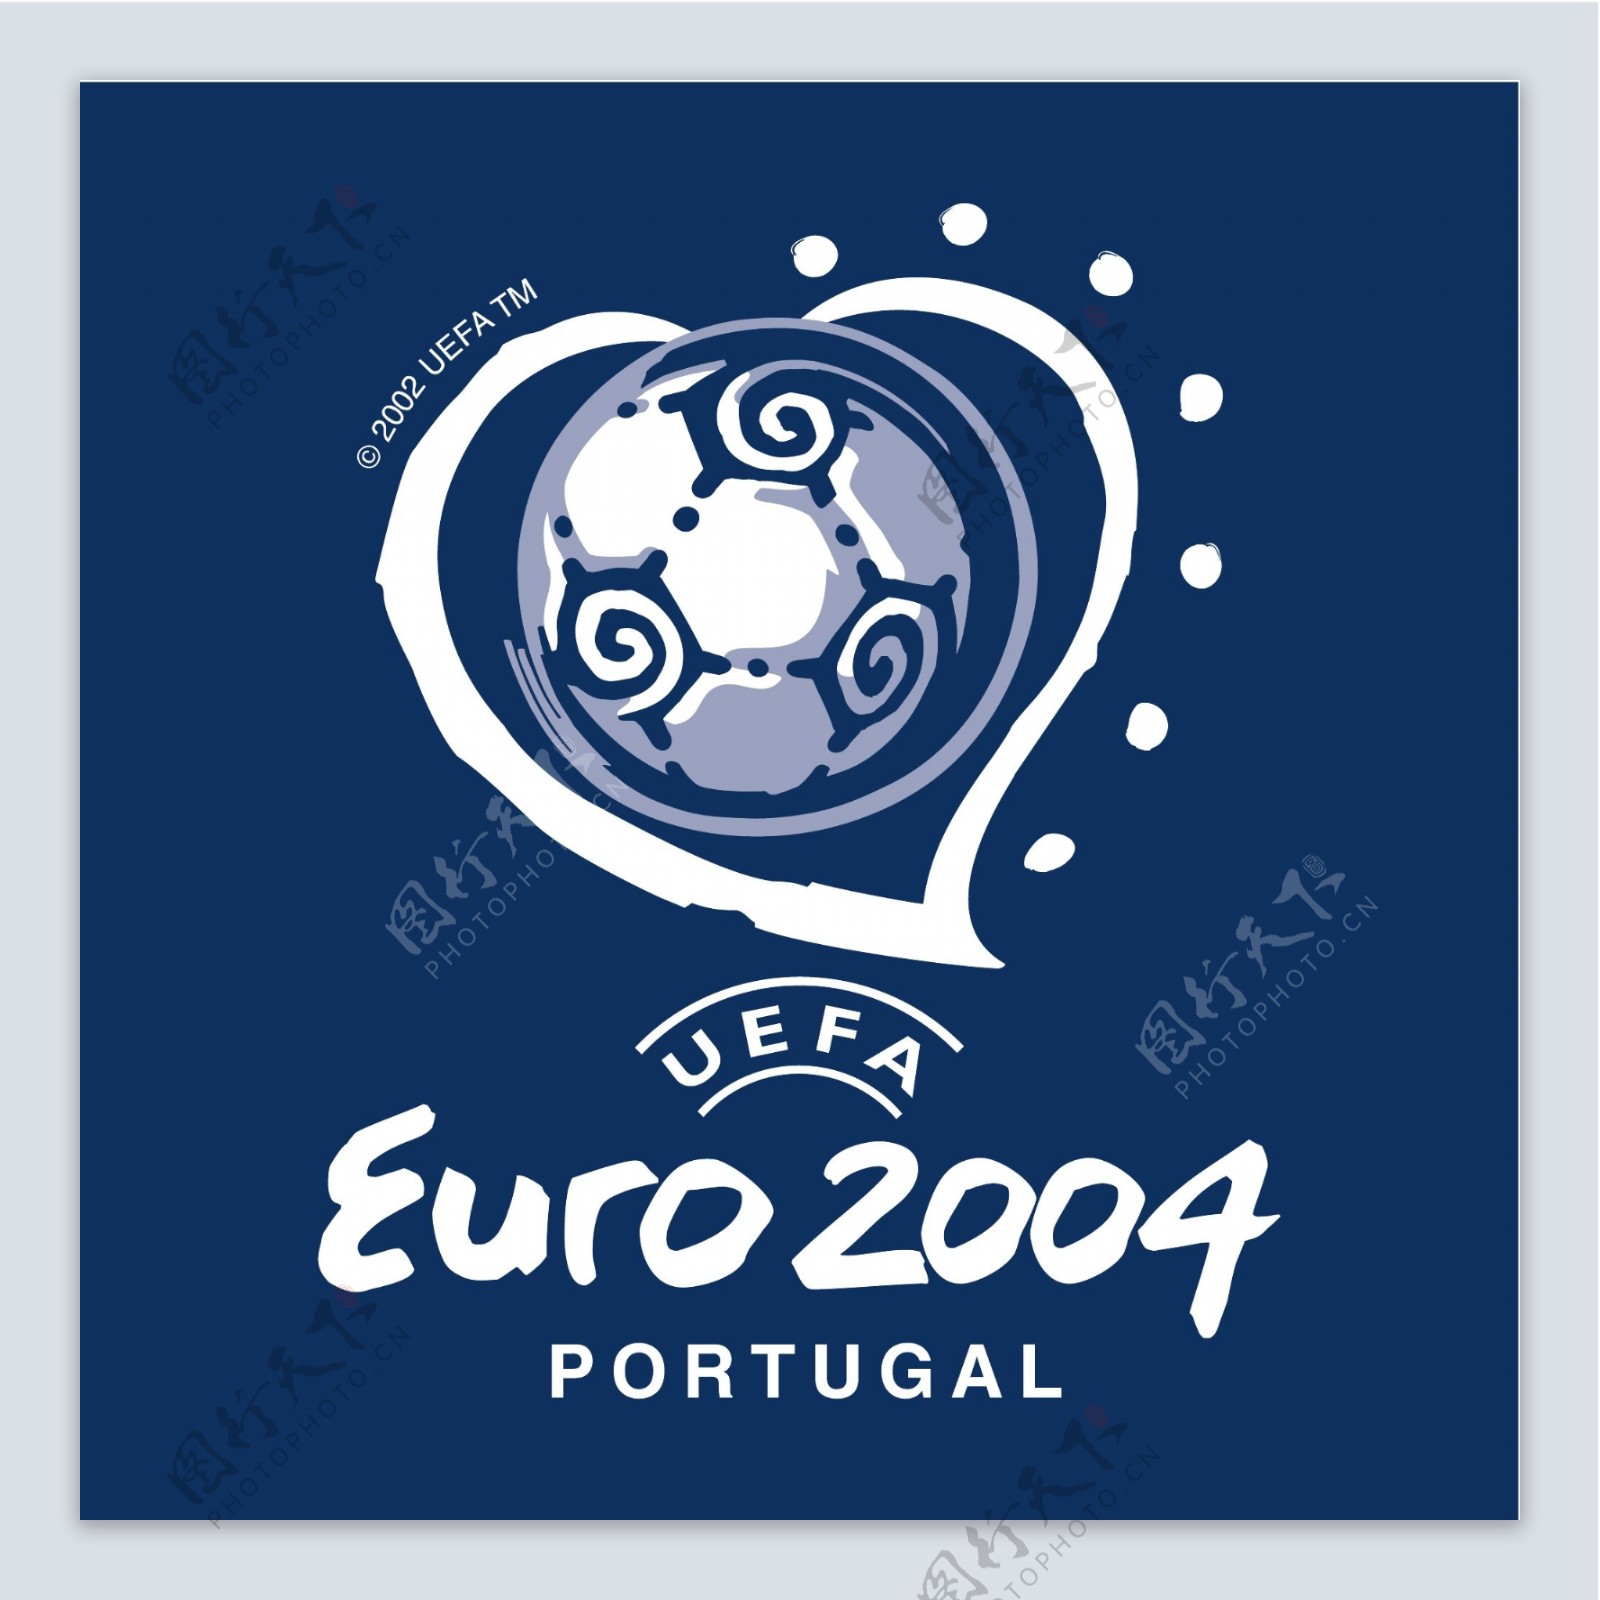 欧洲杯2004葡萄牙28